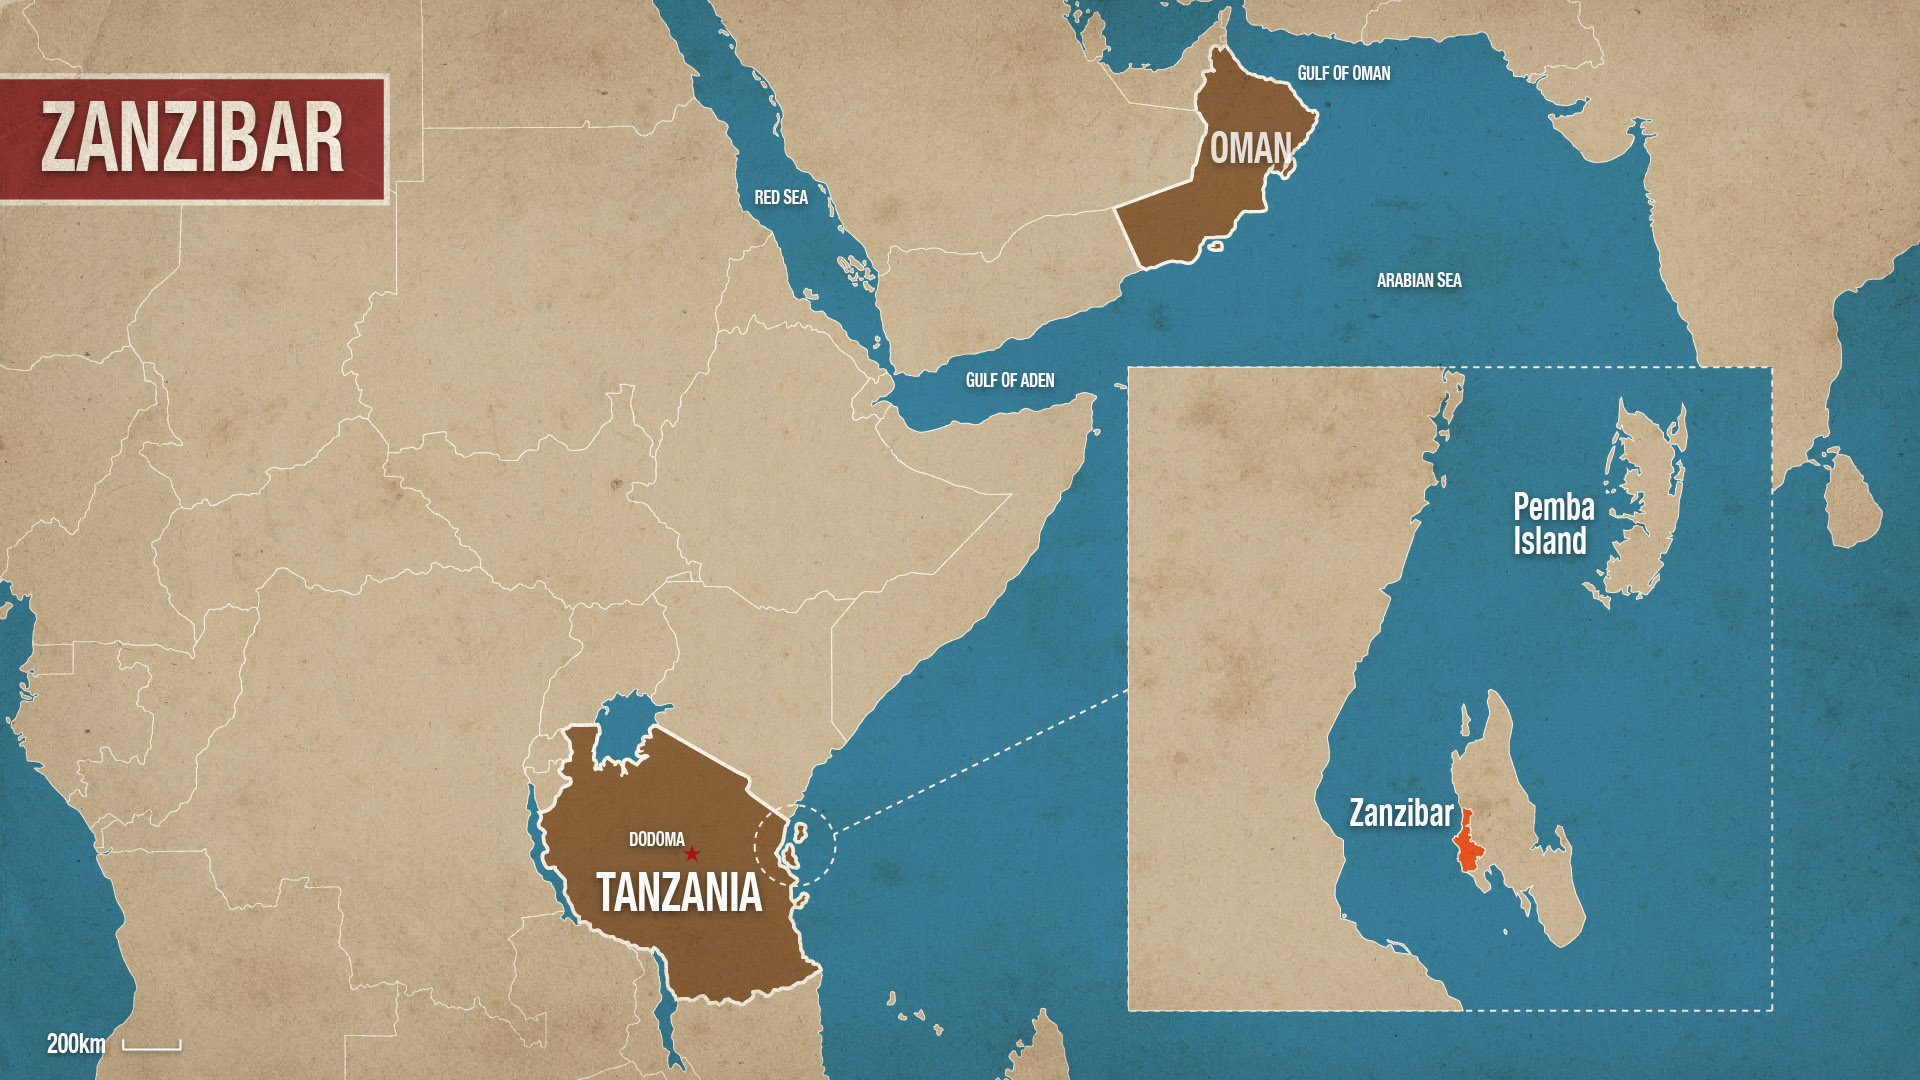 TANZANIA - Zanzibar.jpg